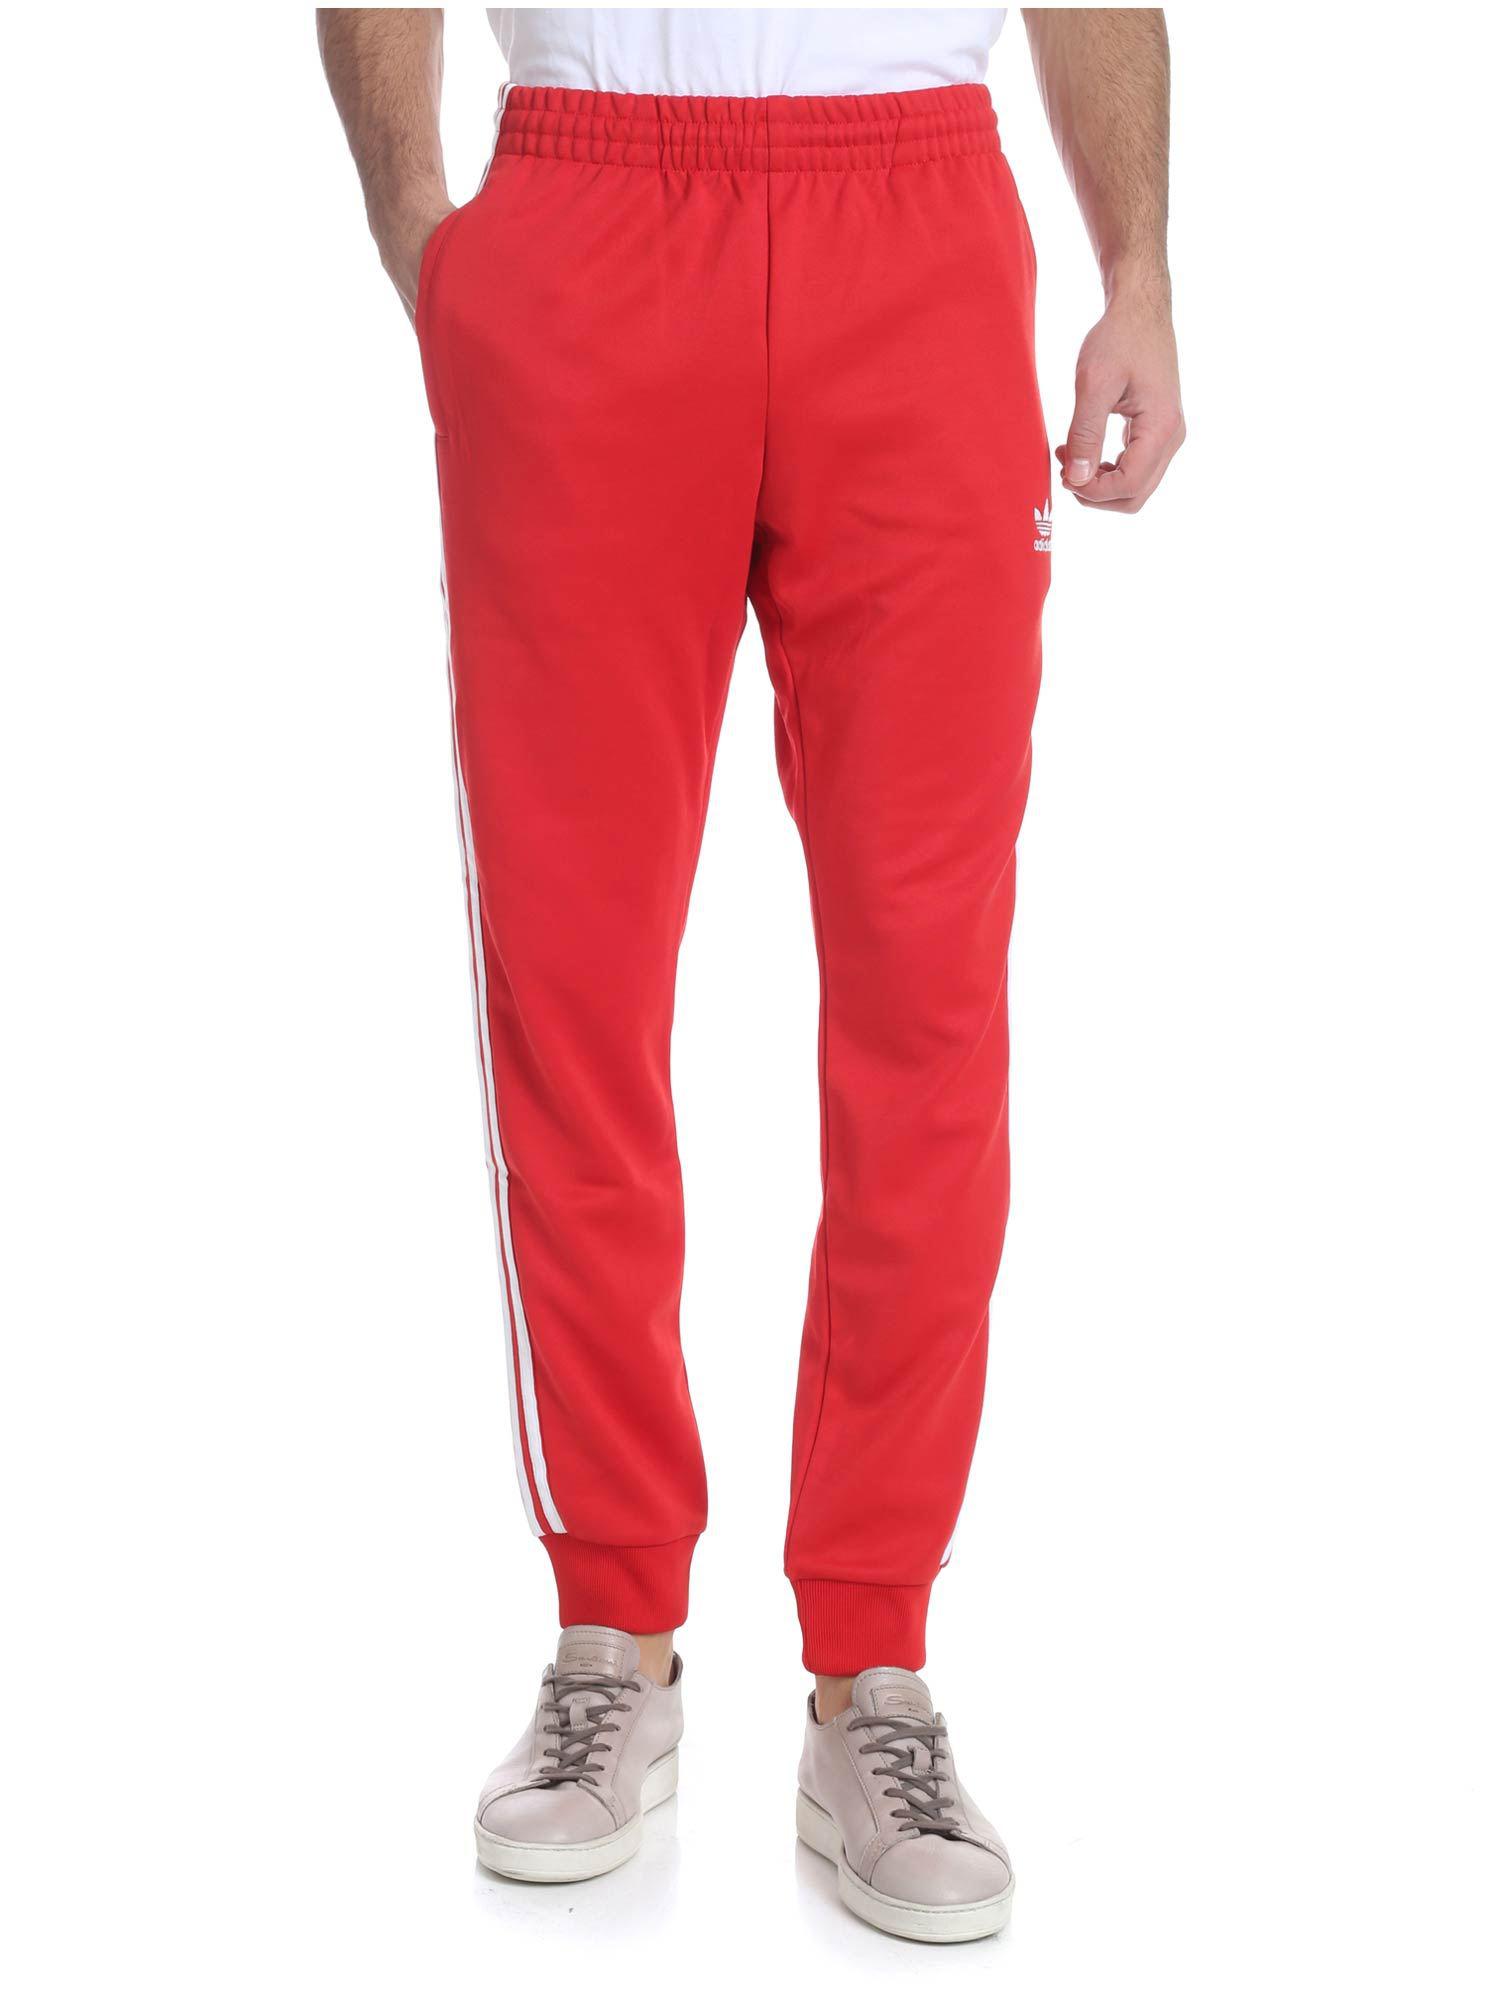 Lyst - Adidas Originals Red 